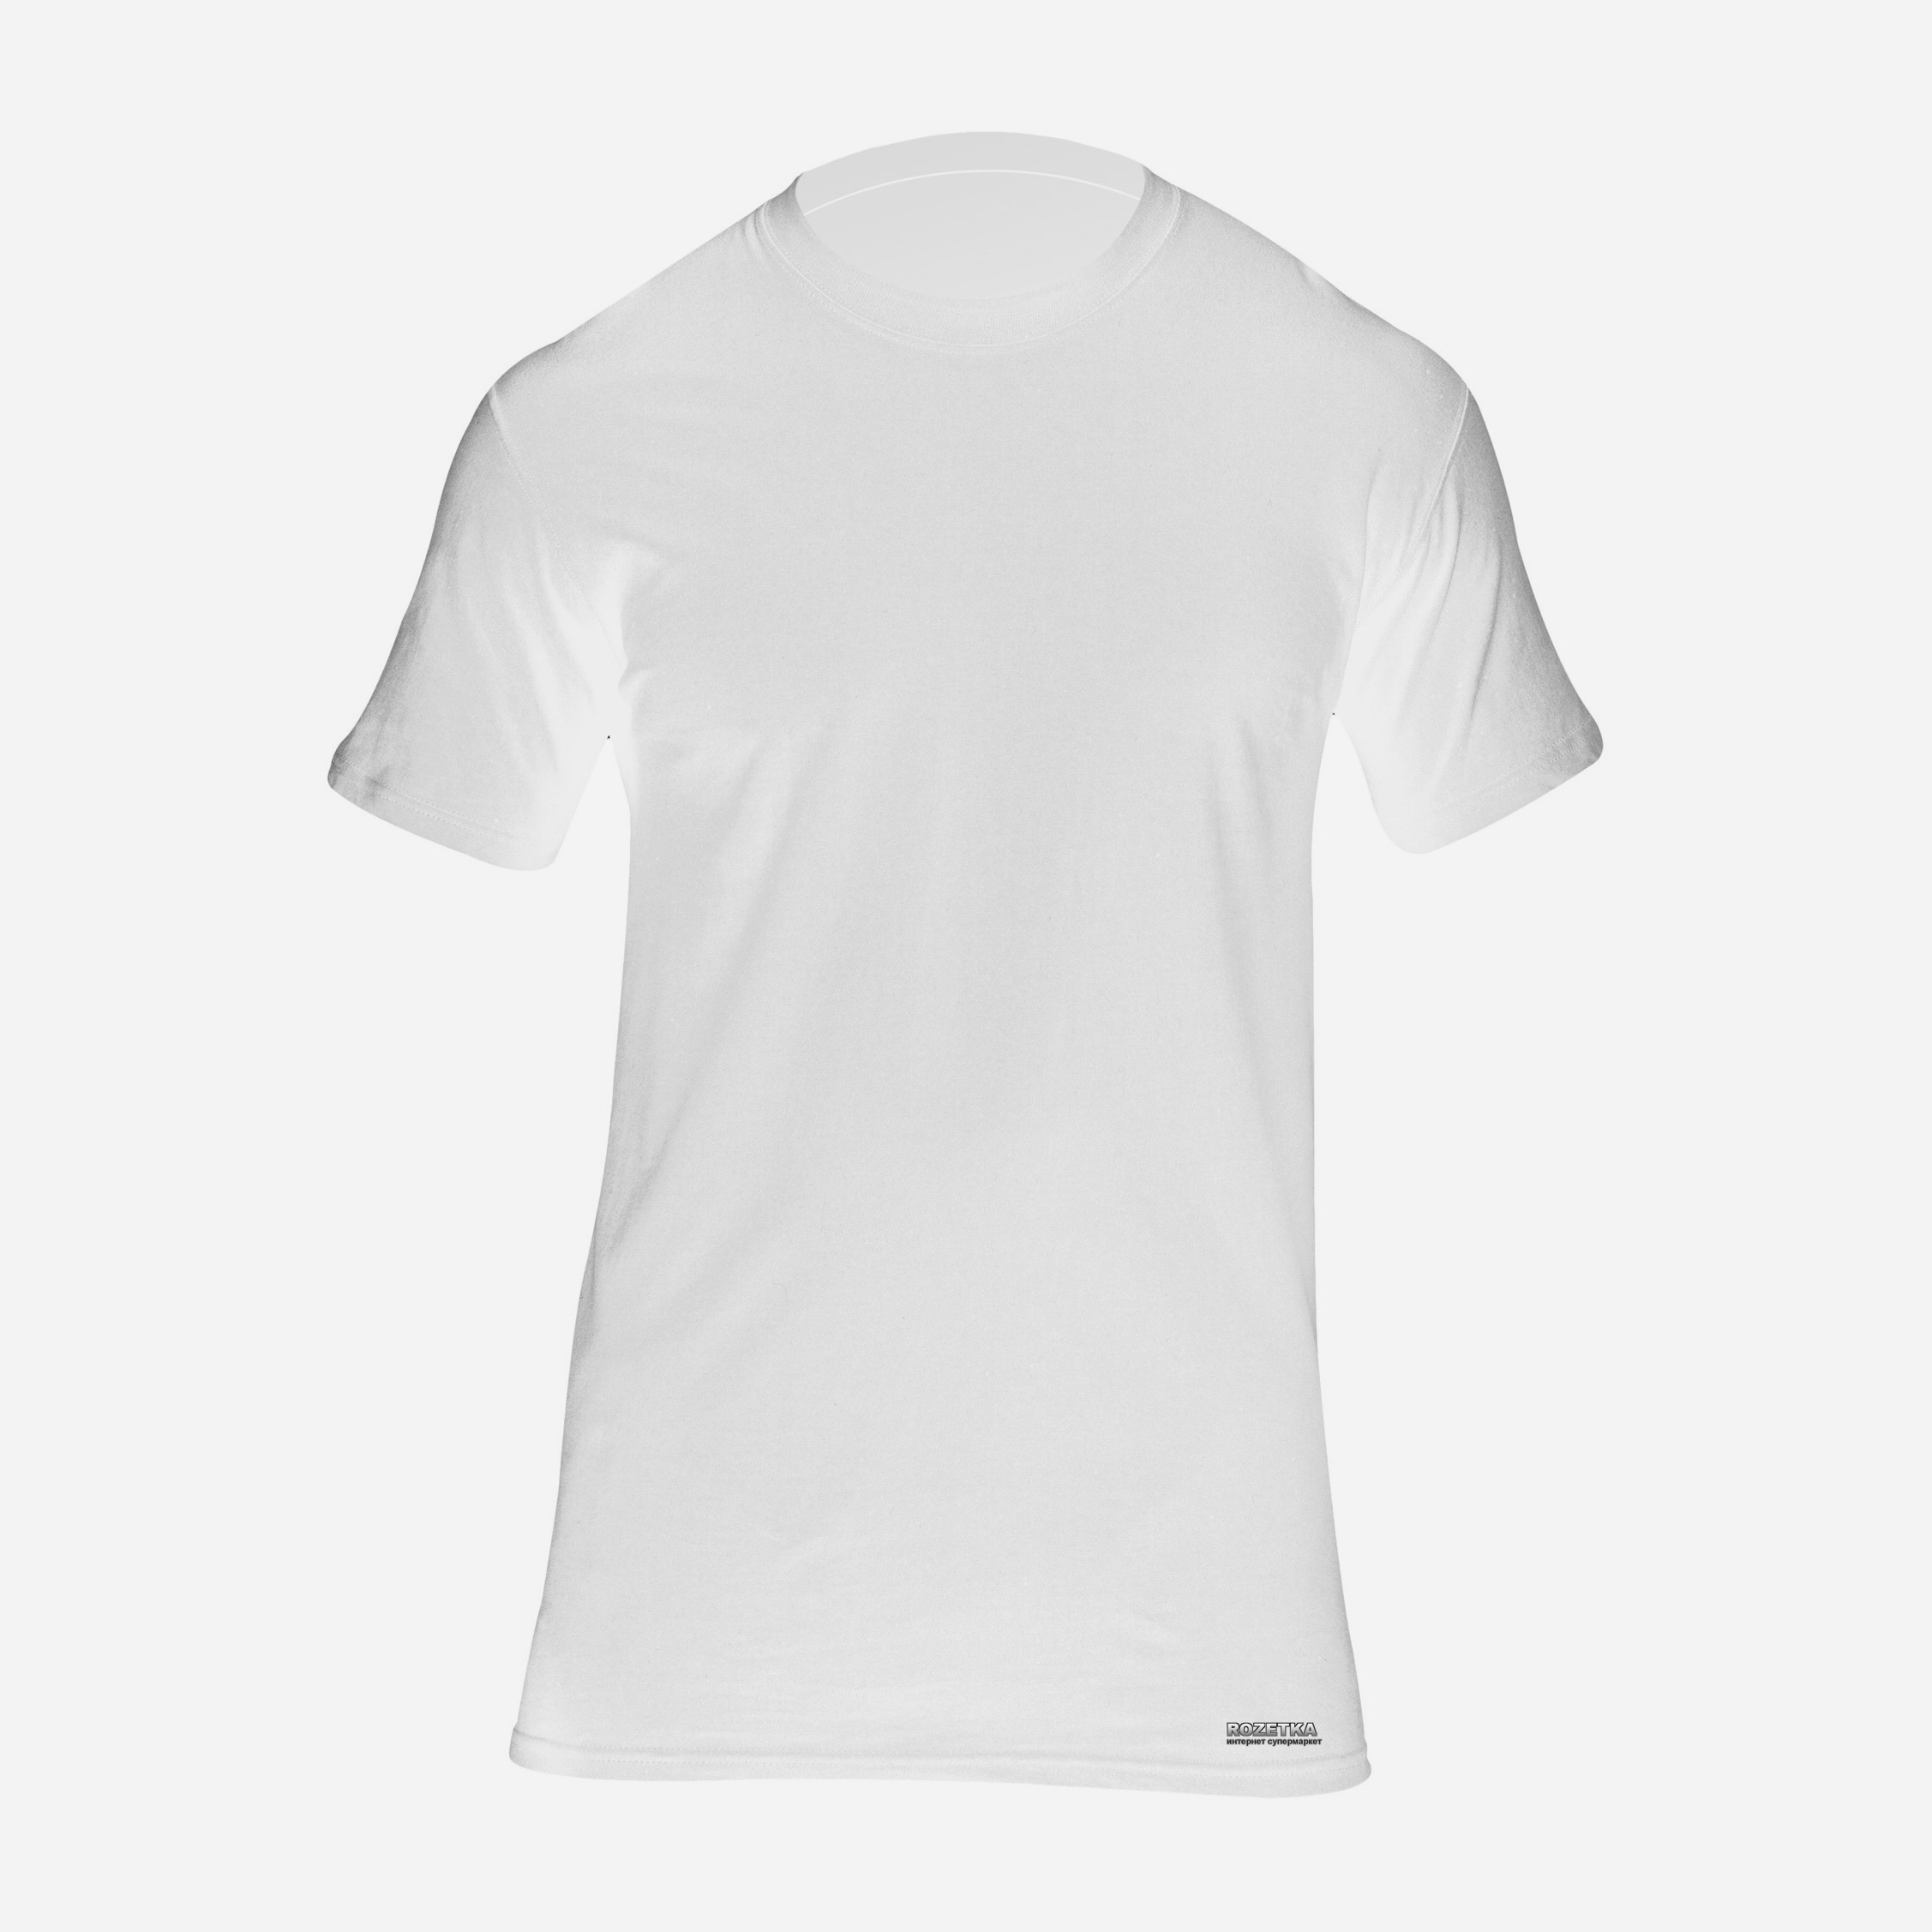 Купить футболку 5. Футболка 5.11 utili-t. 5.11 Tactical футболка. Футболка e190 белая. Тактическая футболка с коротким рукавом.